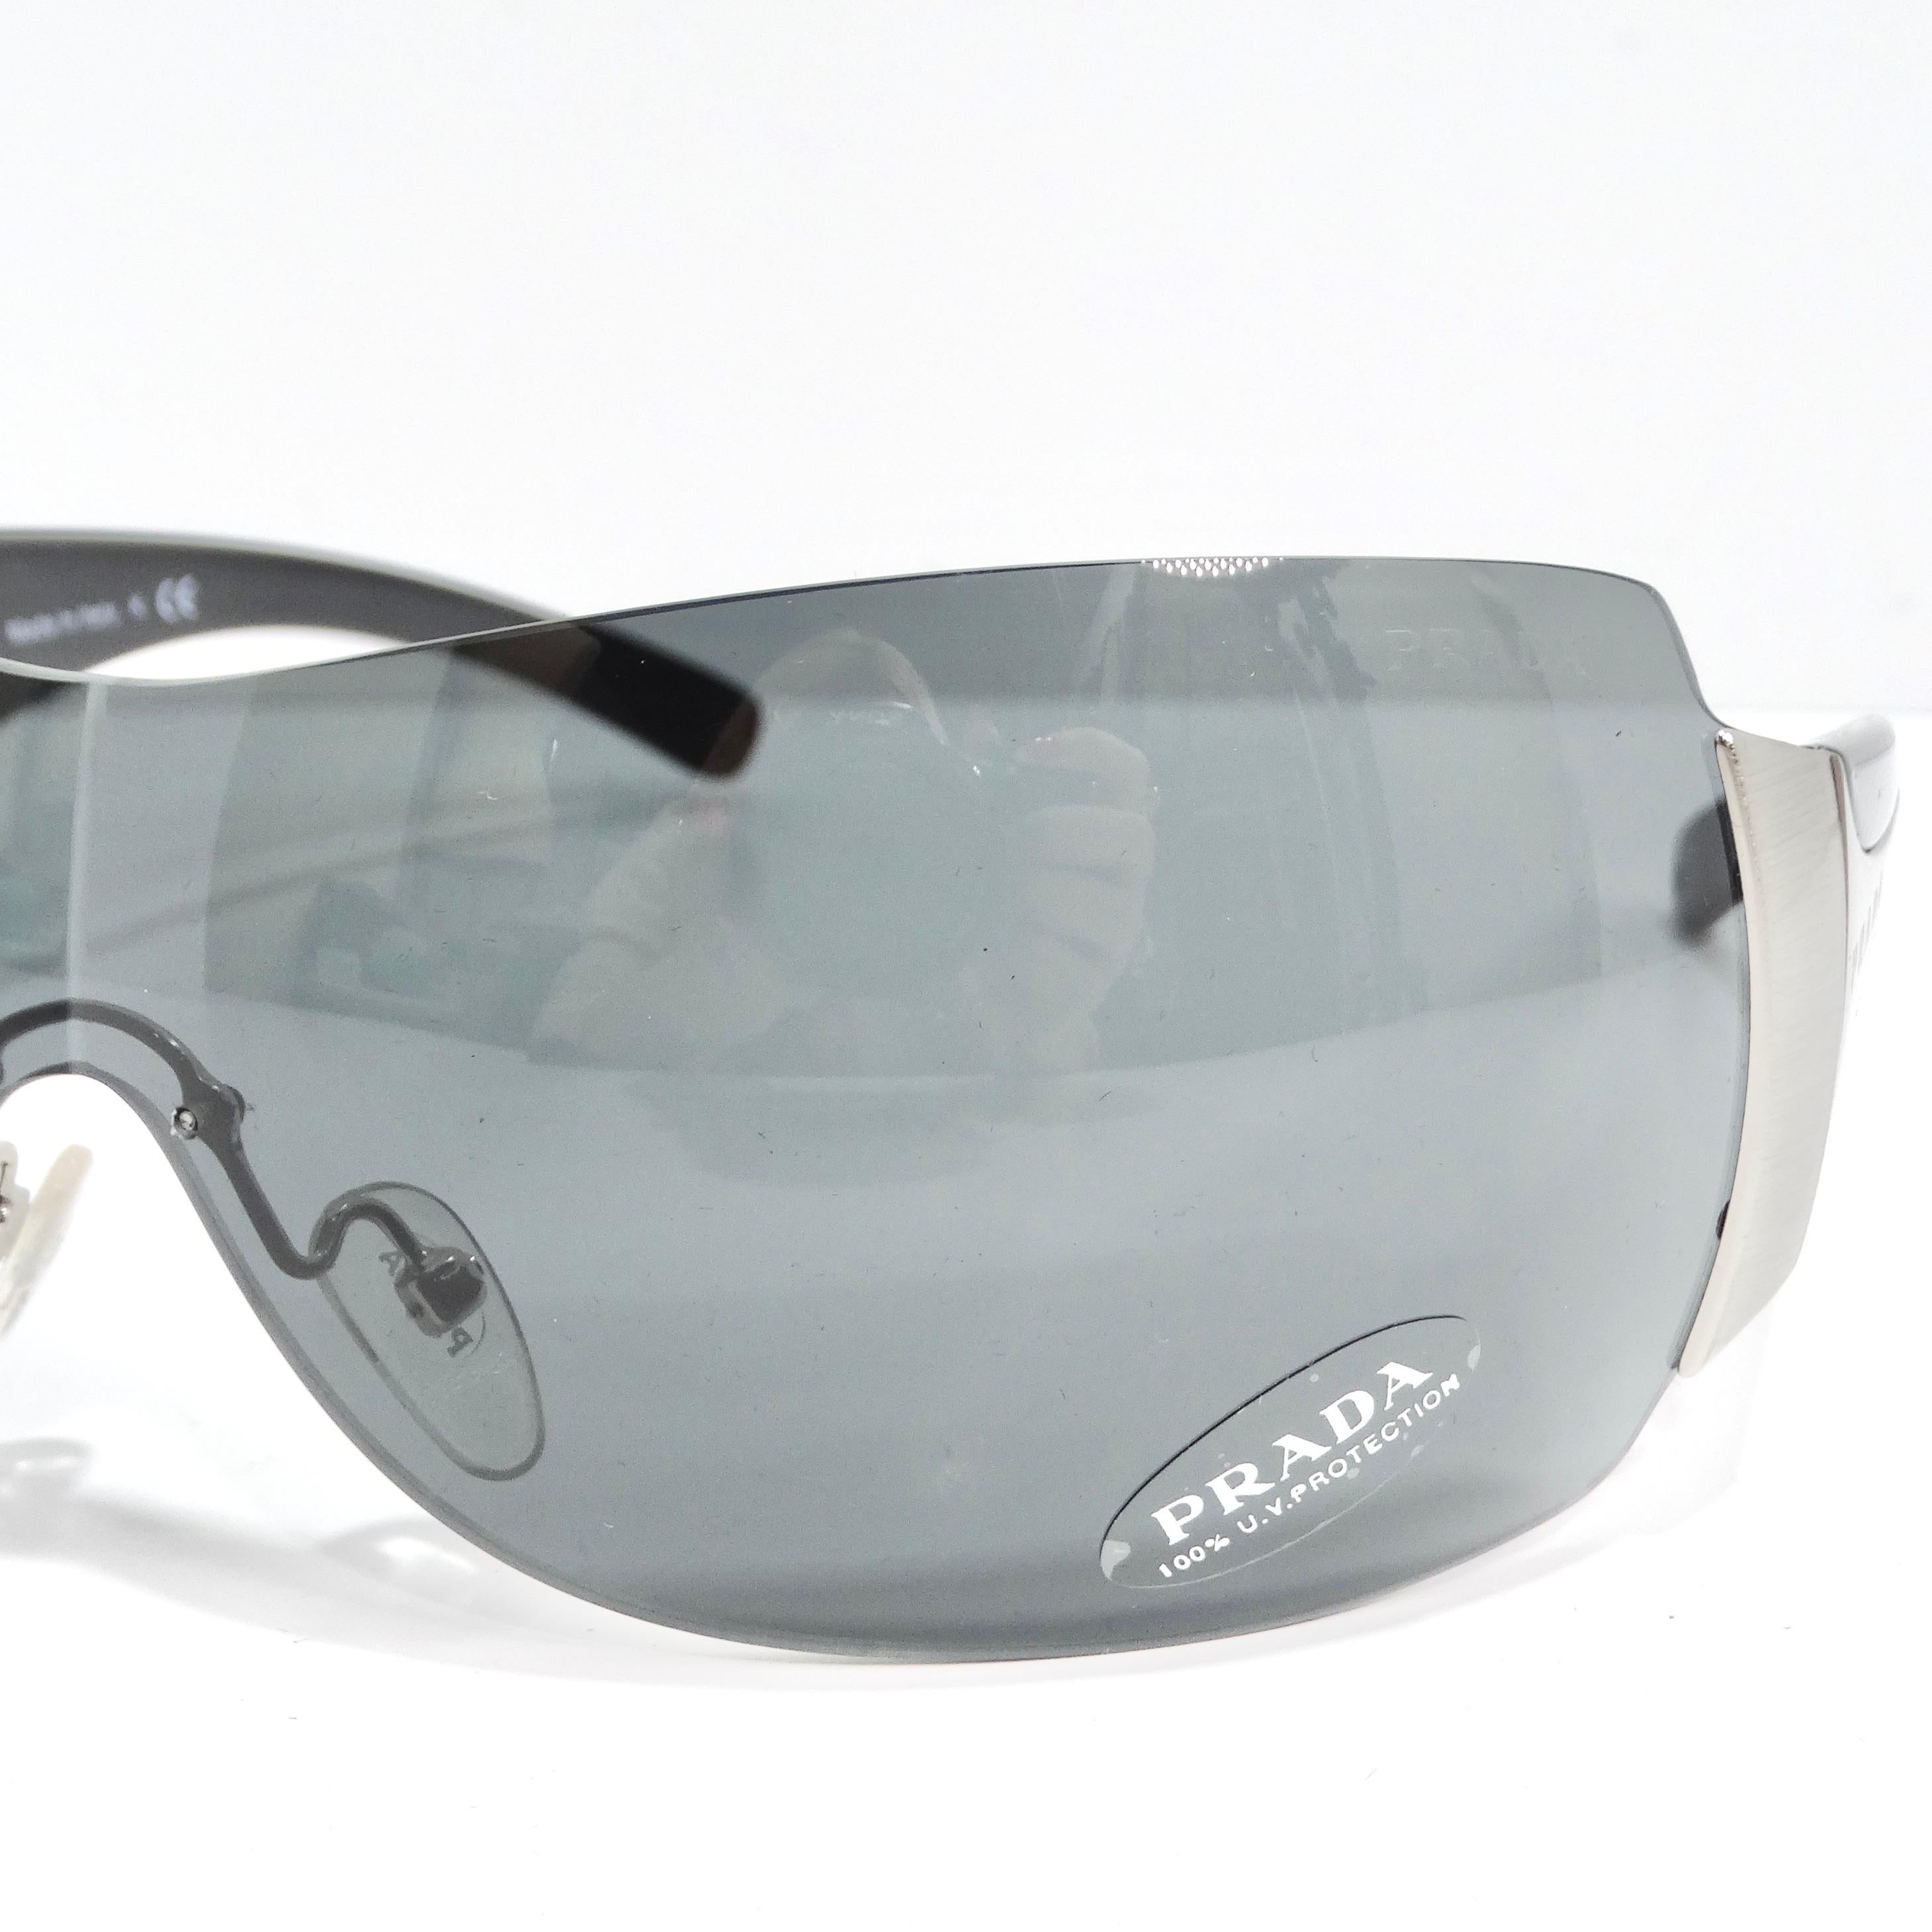 Les lunettes de soleil Prada 1990 Silver Tone Shield sont la quintessence du chic des années 1990. Ces lunettes de soleil classiques de style bouclier sont dotées de fines montures argentées, de branches noires élégantes ornées de logos Prada